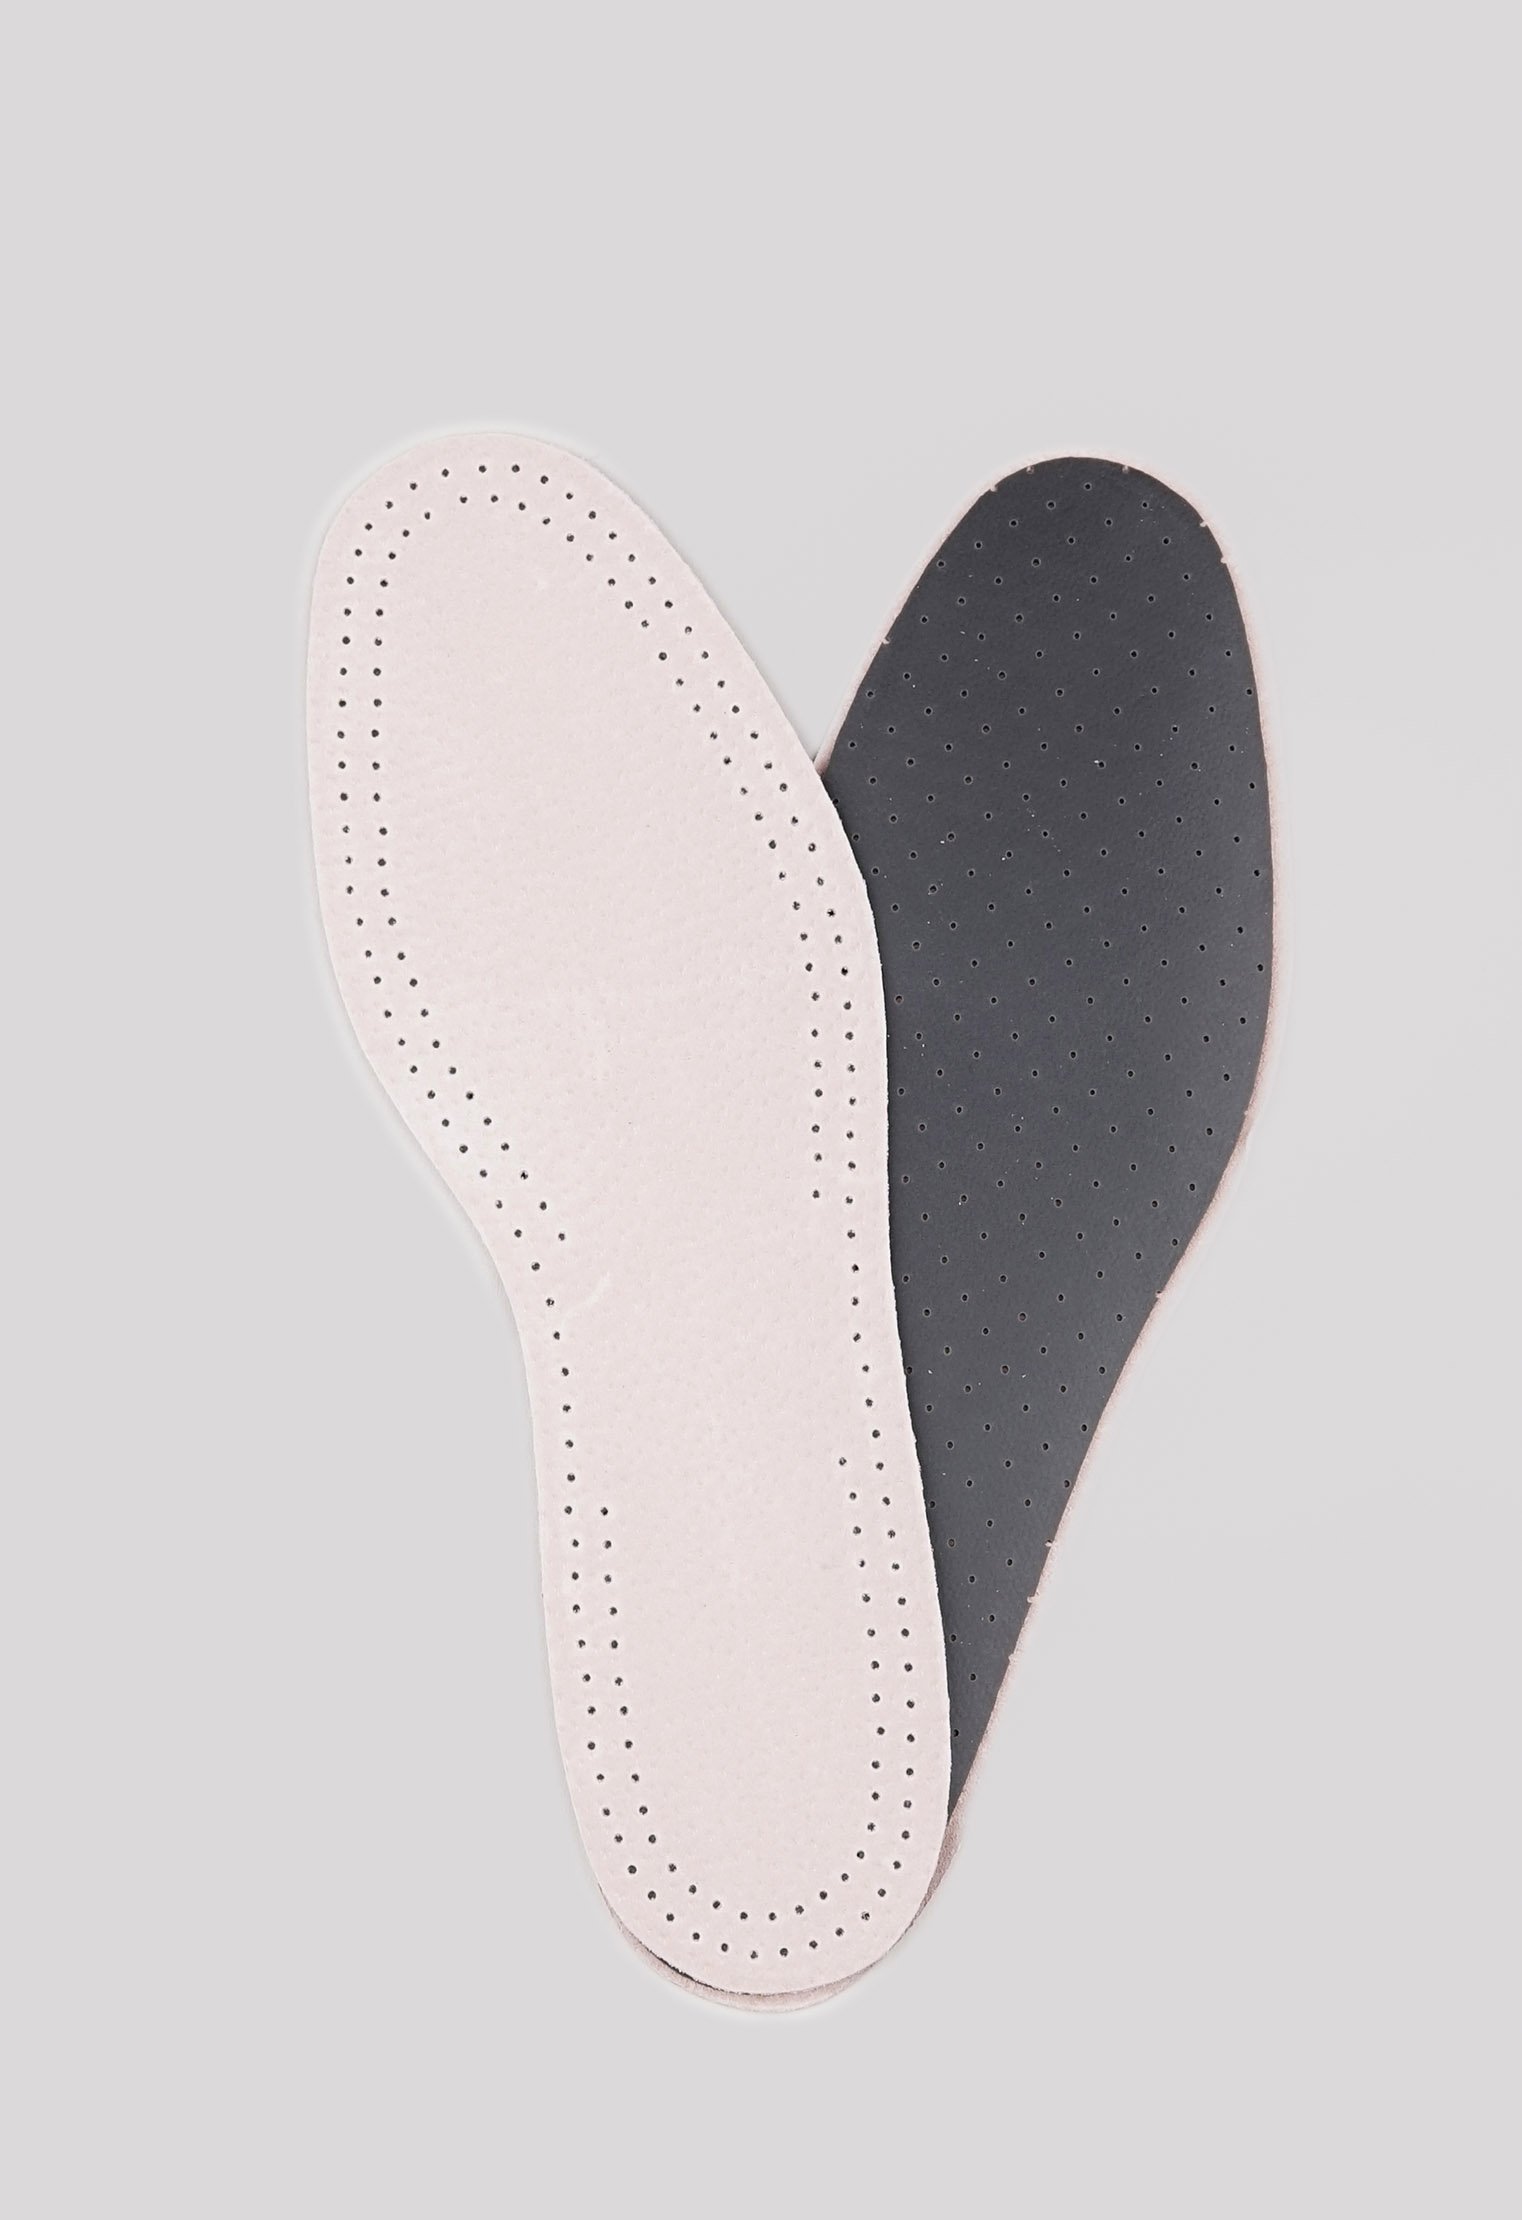 Уход за обувью 20-1574 TARRAGO-Стельки PECARI CARBON, натральная кожа/латекс, р.39/40 стельки для обуви tarrago leather carbon р 37 38